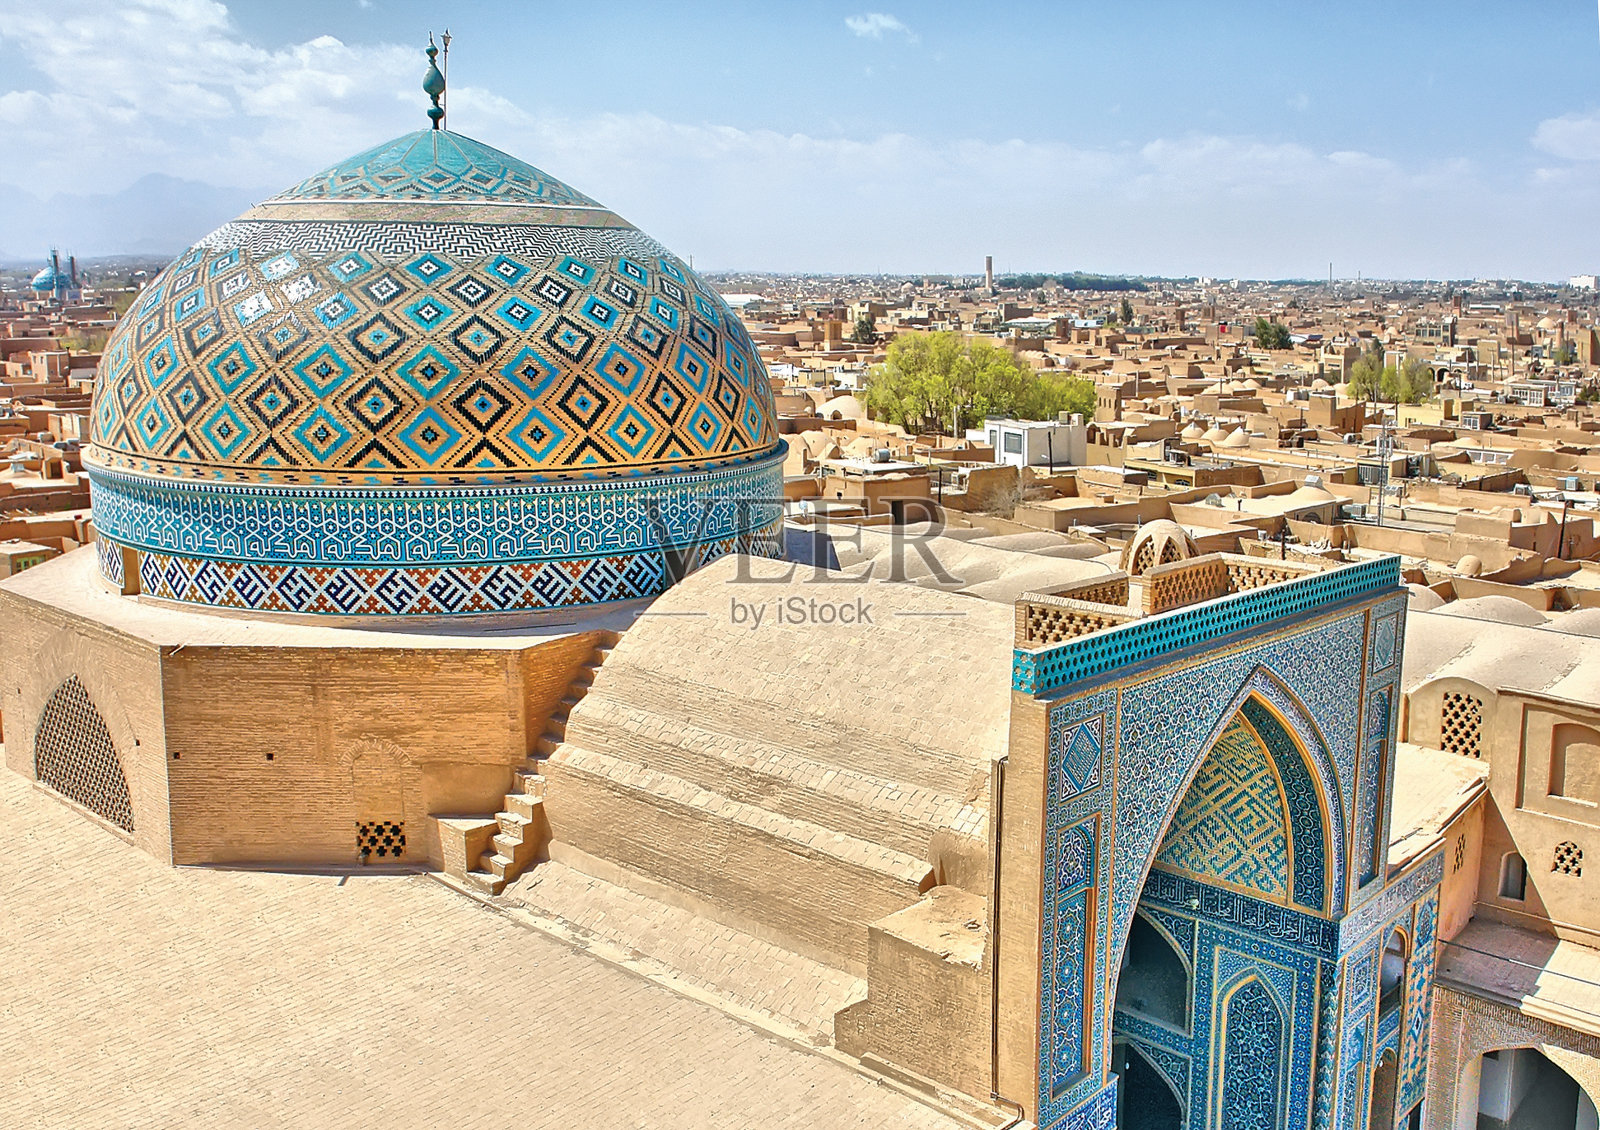 【携程攻略】伊斯法罕聚礼清真寺景点,Jame Mosque of Yazd的48米宣礼塔是伊朗所有清真寺里最高的。最大特…